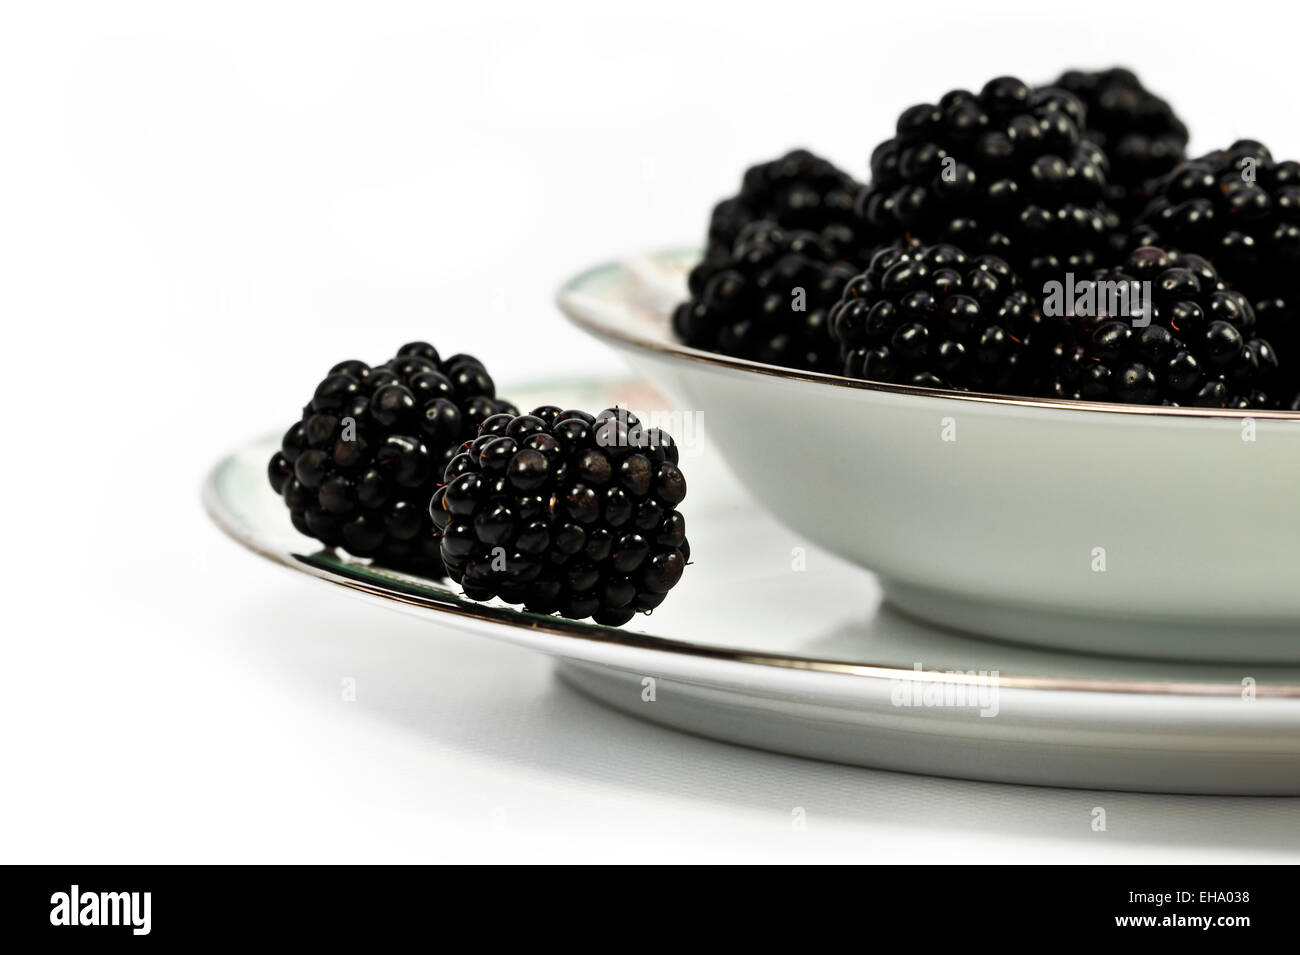 Bowl of fresh blackberries Stock Photo